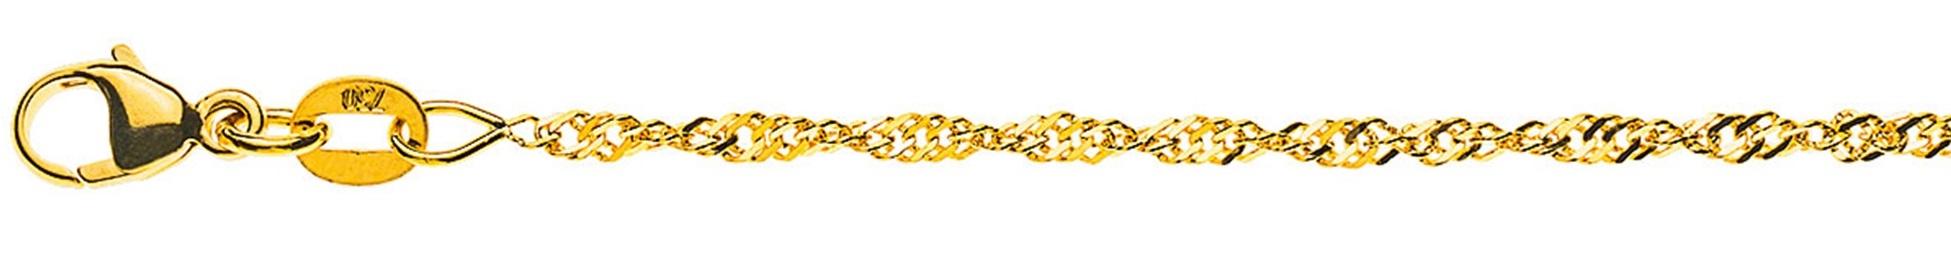 AURONOS Prestige Necklace Yellow Gold 18K Singapore Chain 38cm 1.9mm